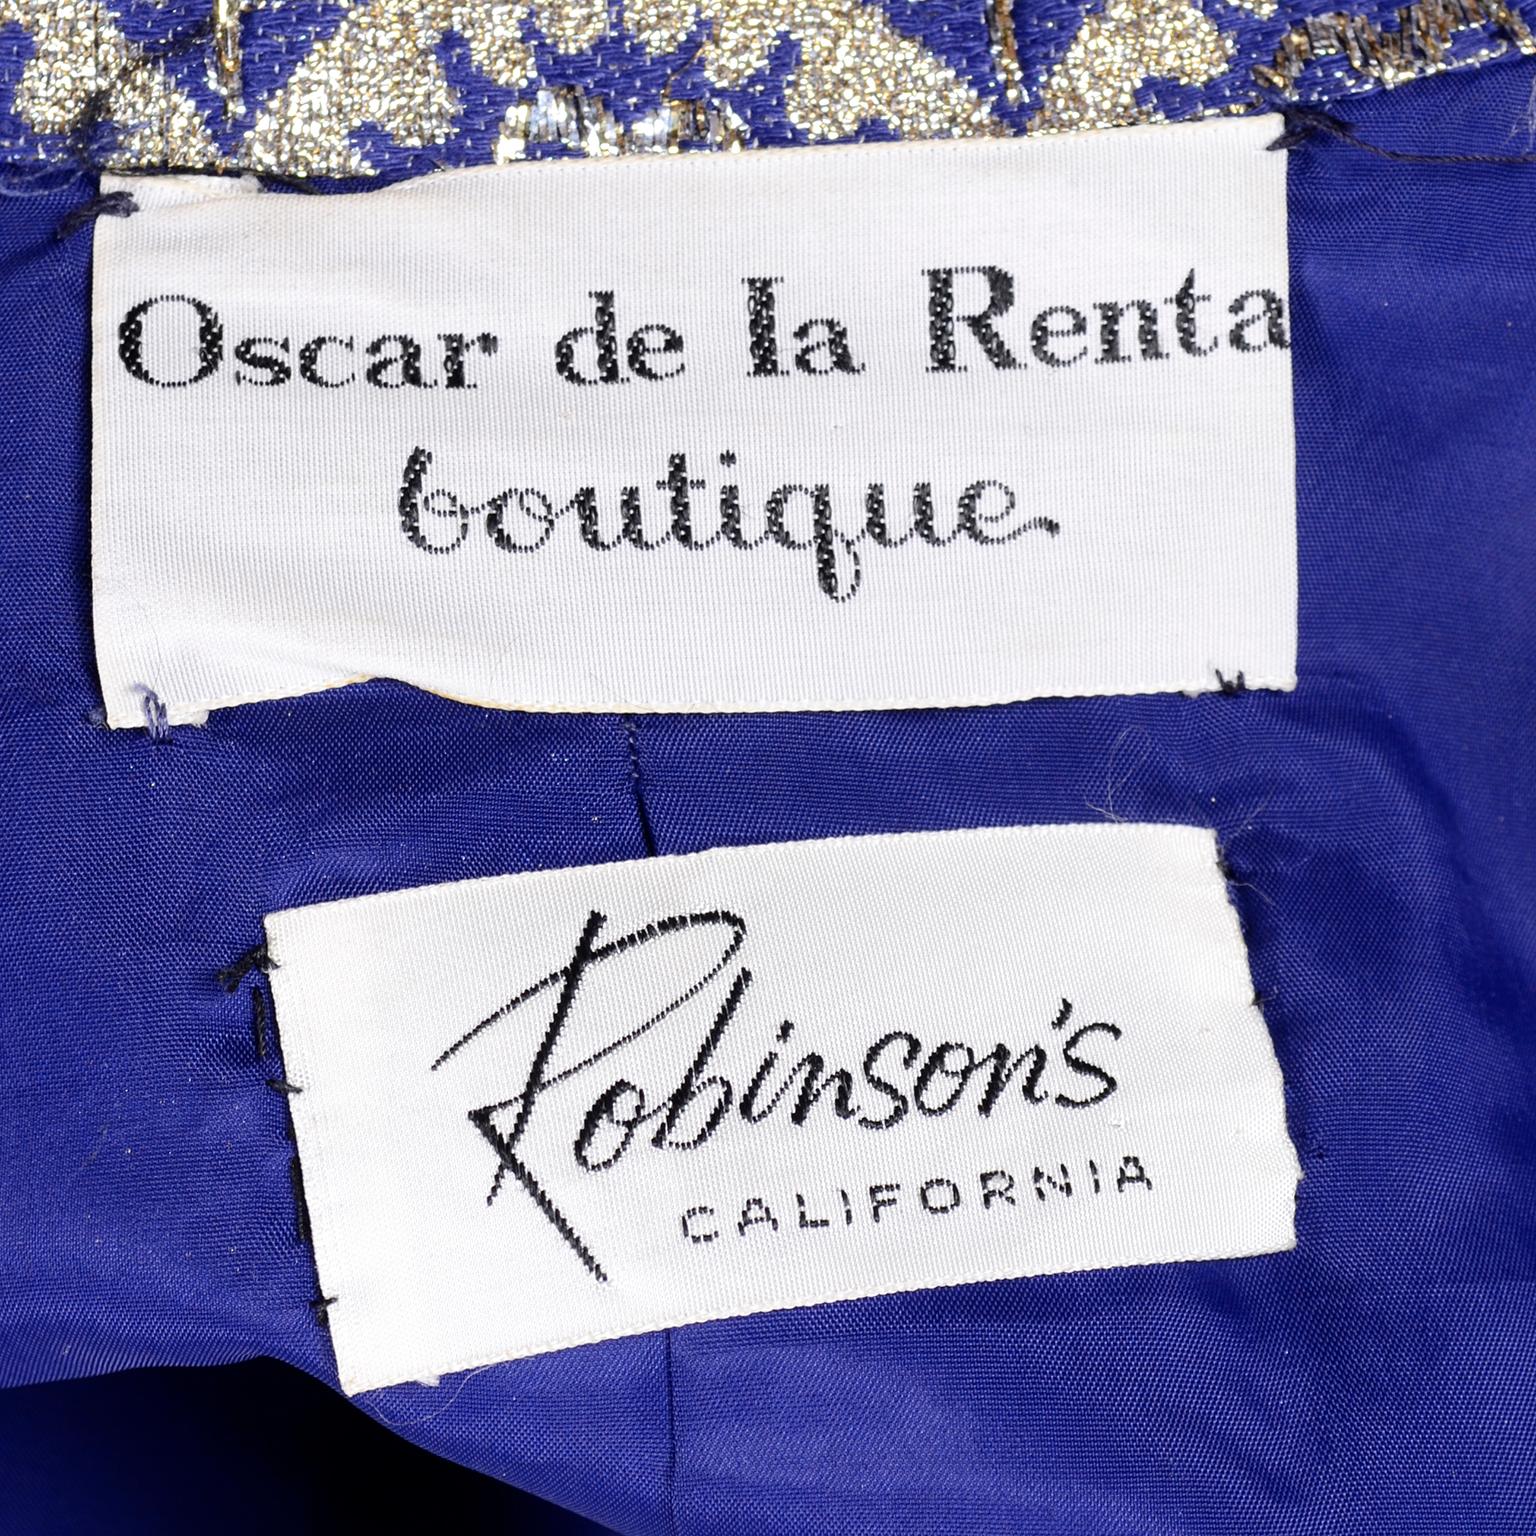 Oscar de la Renta Vintage Dress & Jacket in Royal Blue & Silver Metallic Brocade 6